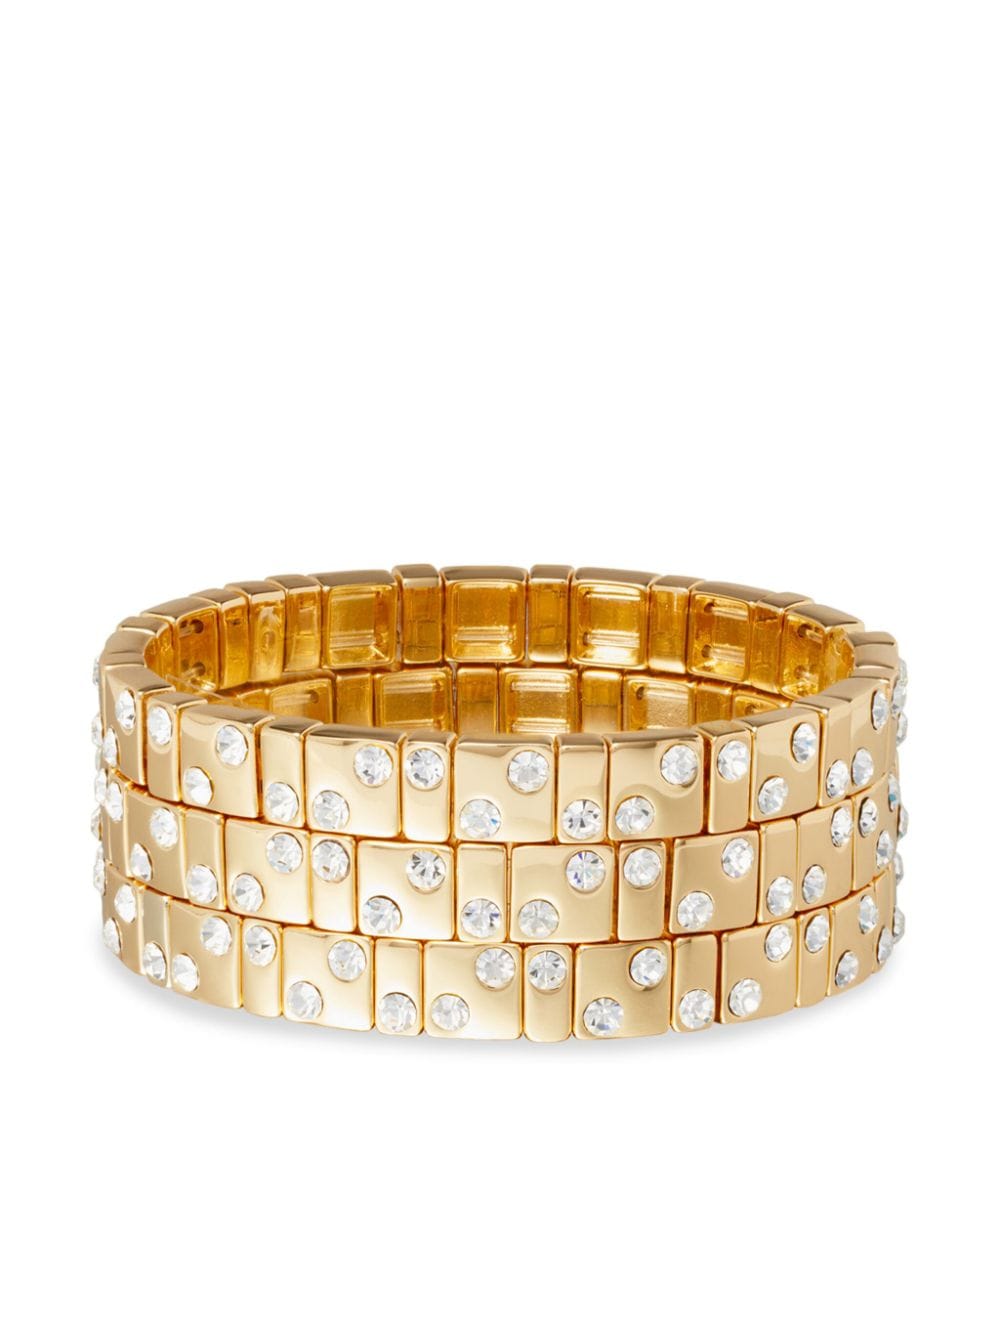 Roxanne Assoulin Twinkle Twinkle bracelets (set of three) - Gold von Roxanne Assoulin